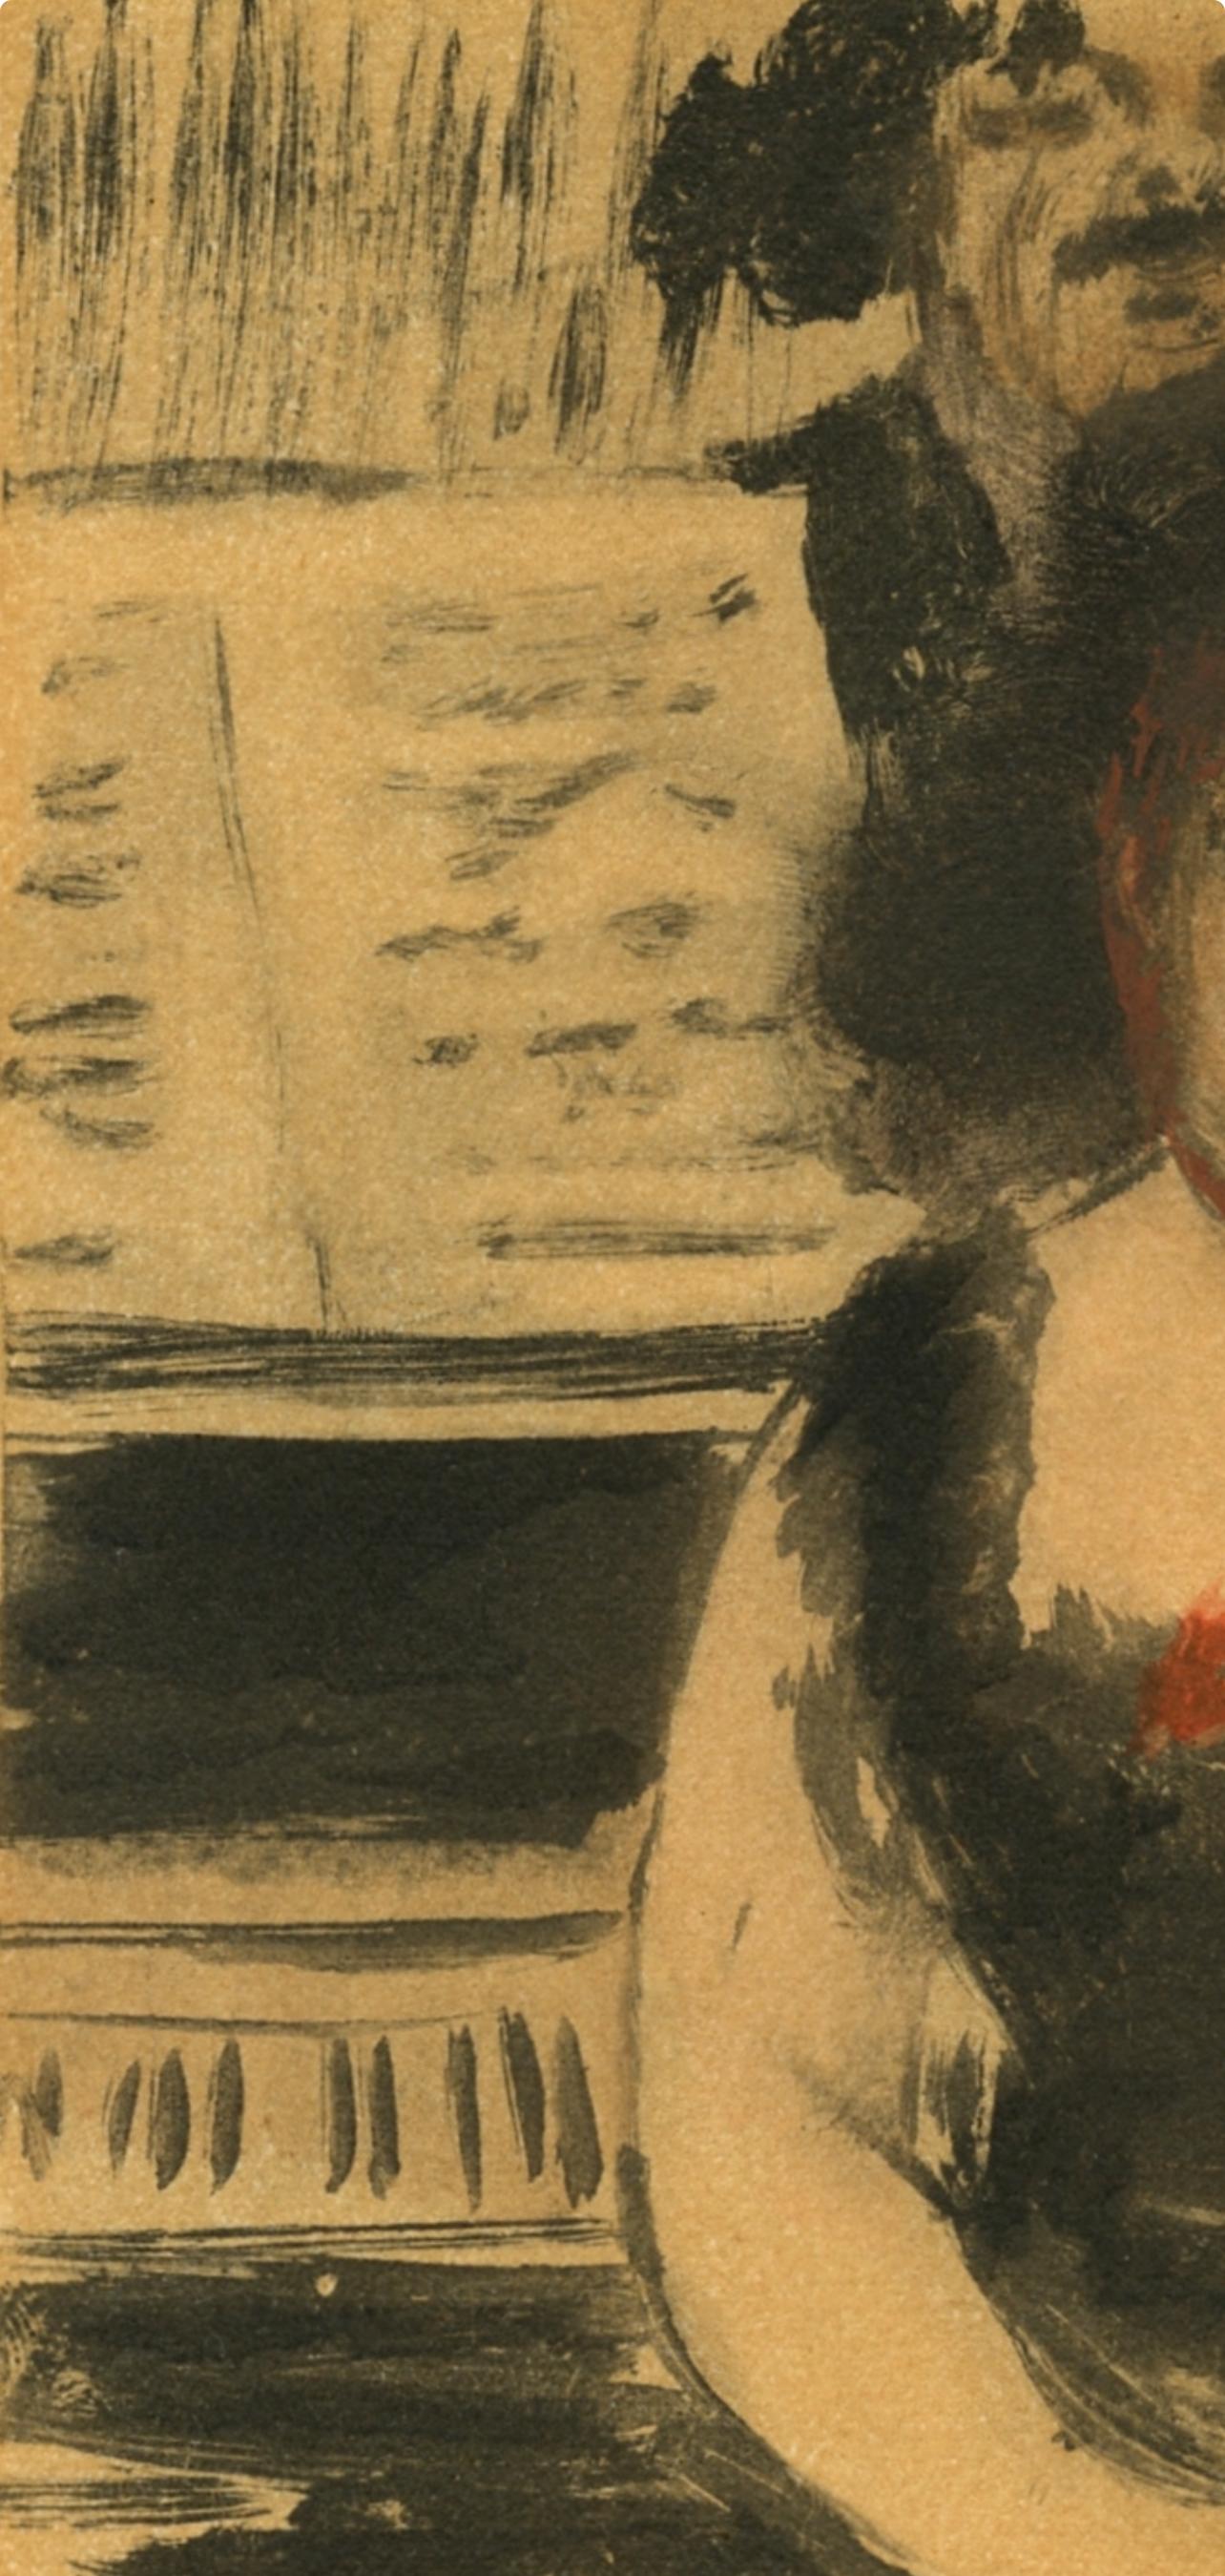 Degas, La Pianiste et le Chanteur, Les Monotypes (after) - Impressionist Print by Edgar Degas